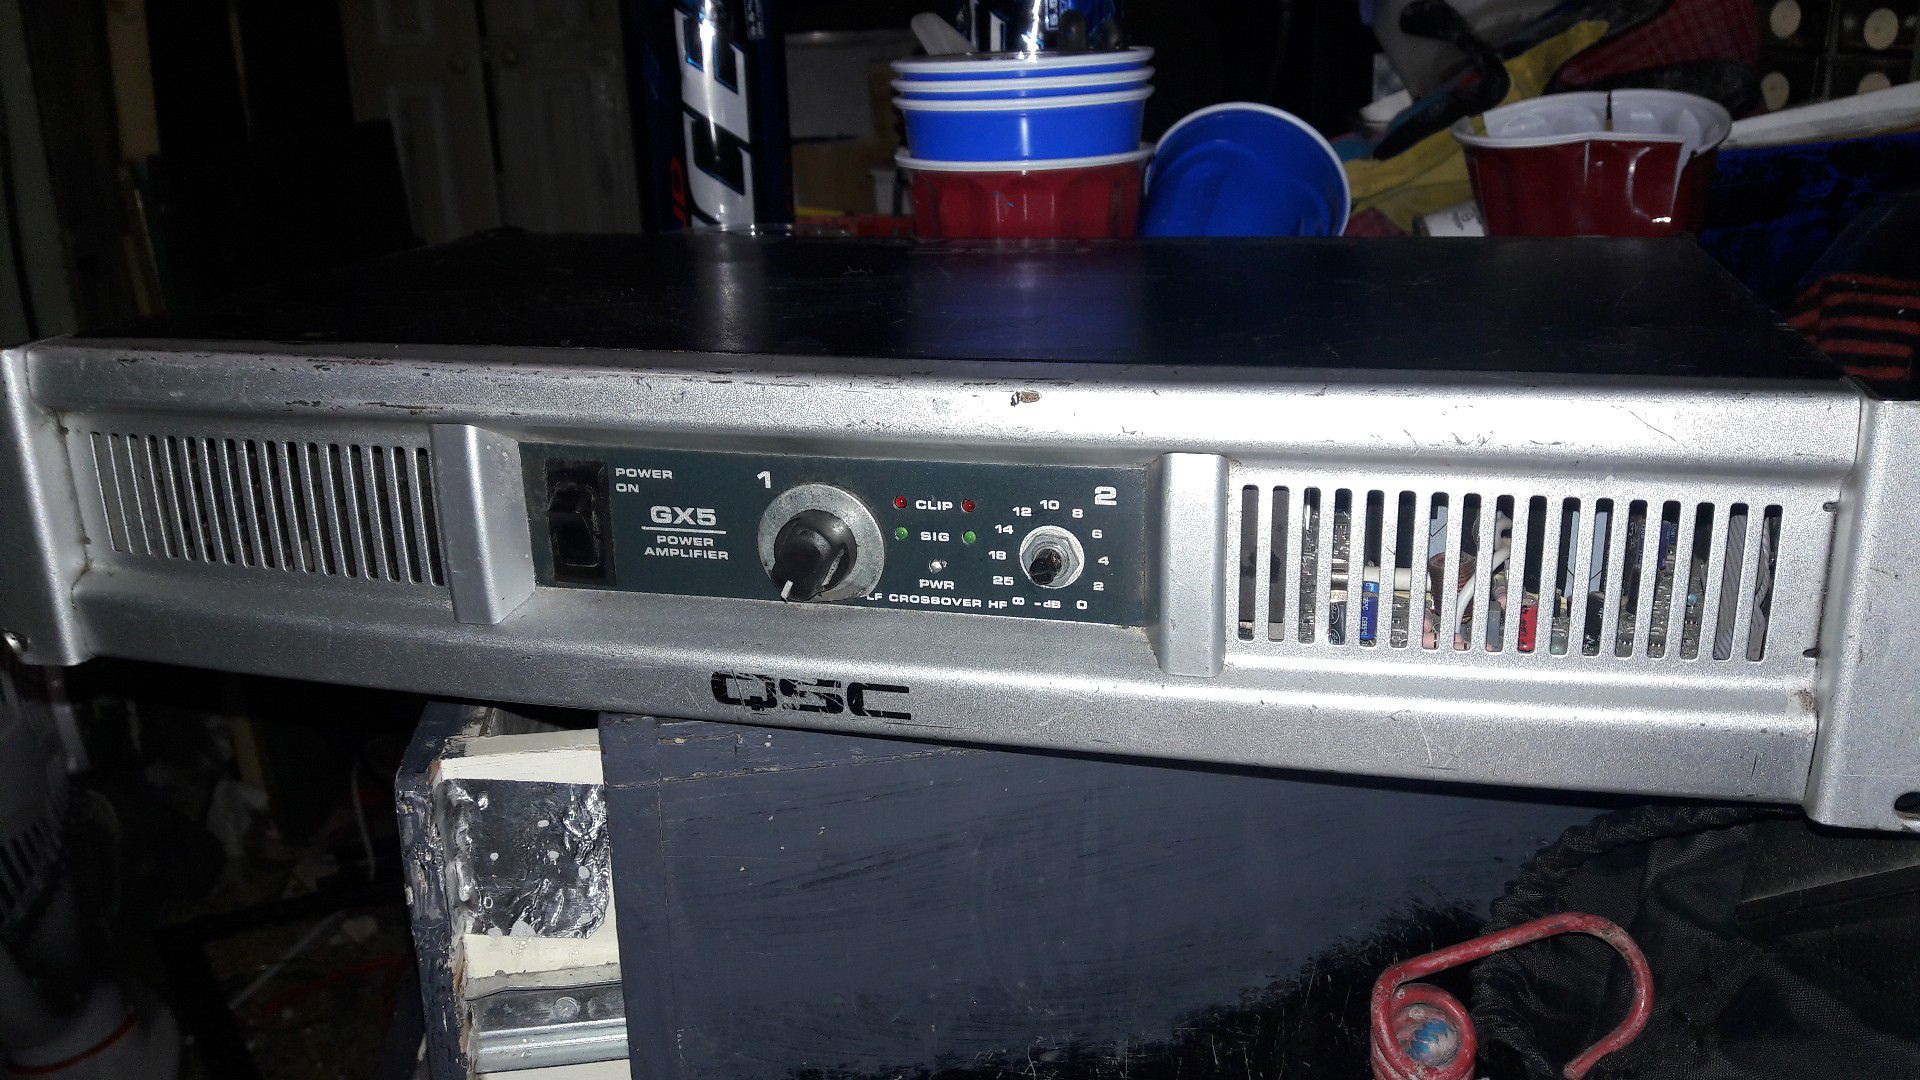 GX5 power amplifier